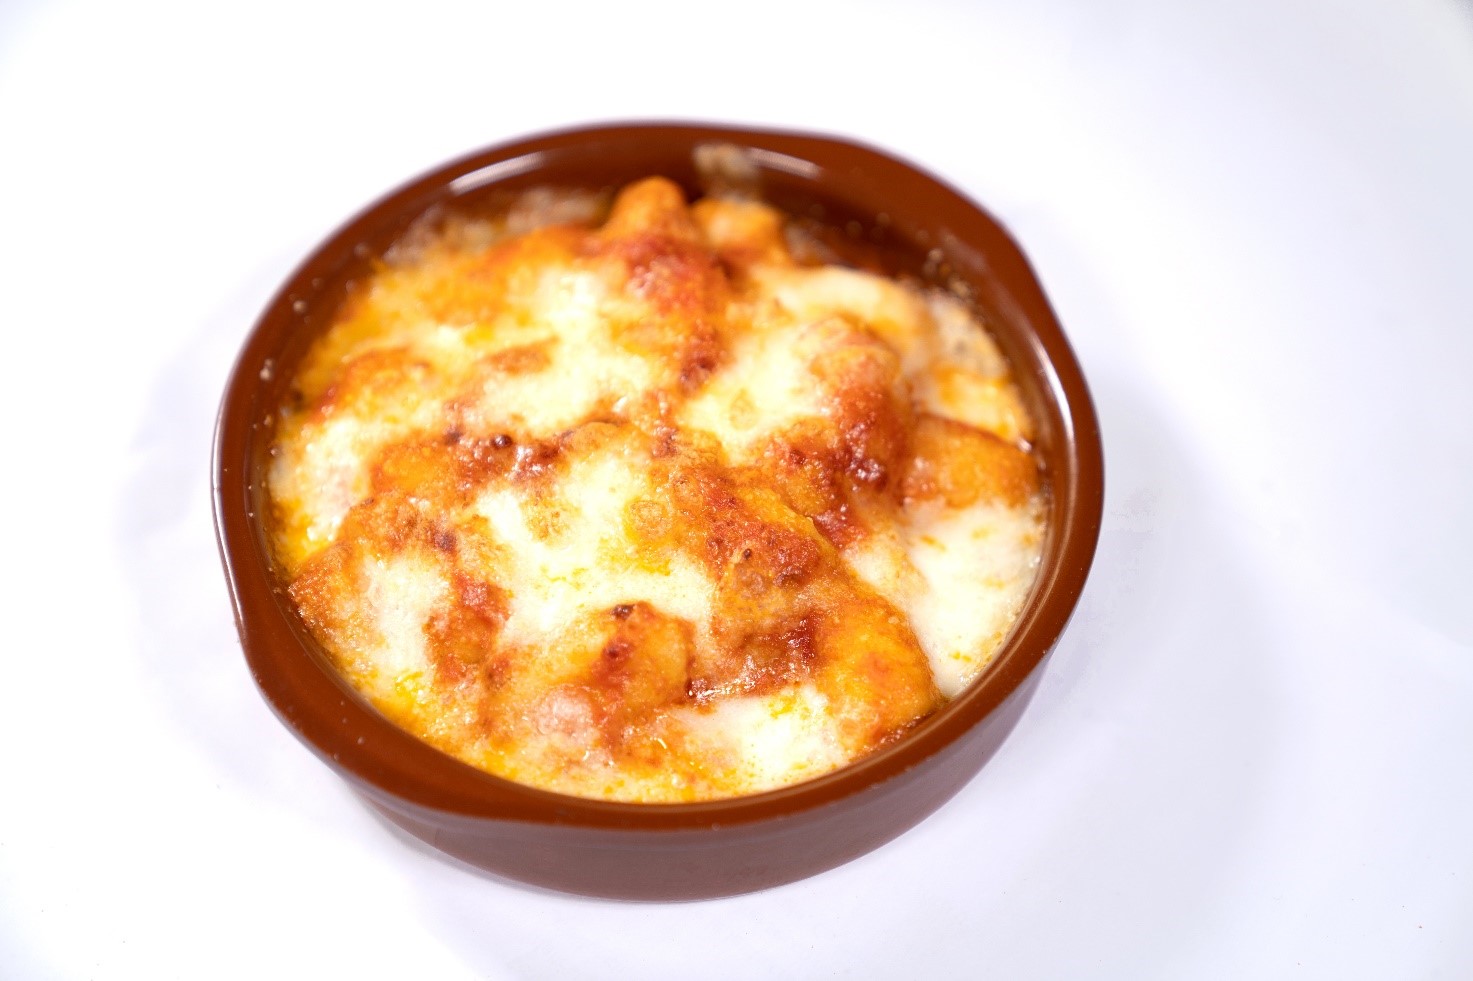 索伦托风味意式面疙瘩佐番茄酱和马苏里拉奶酪